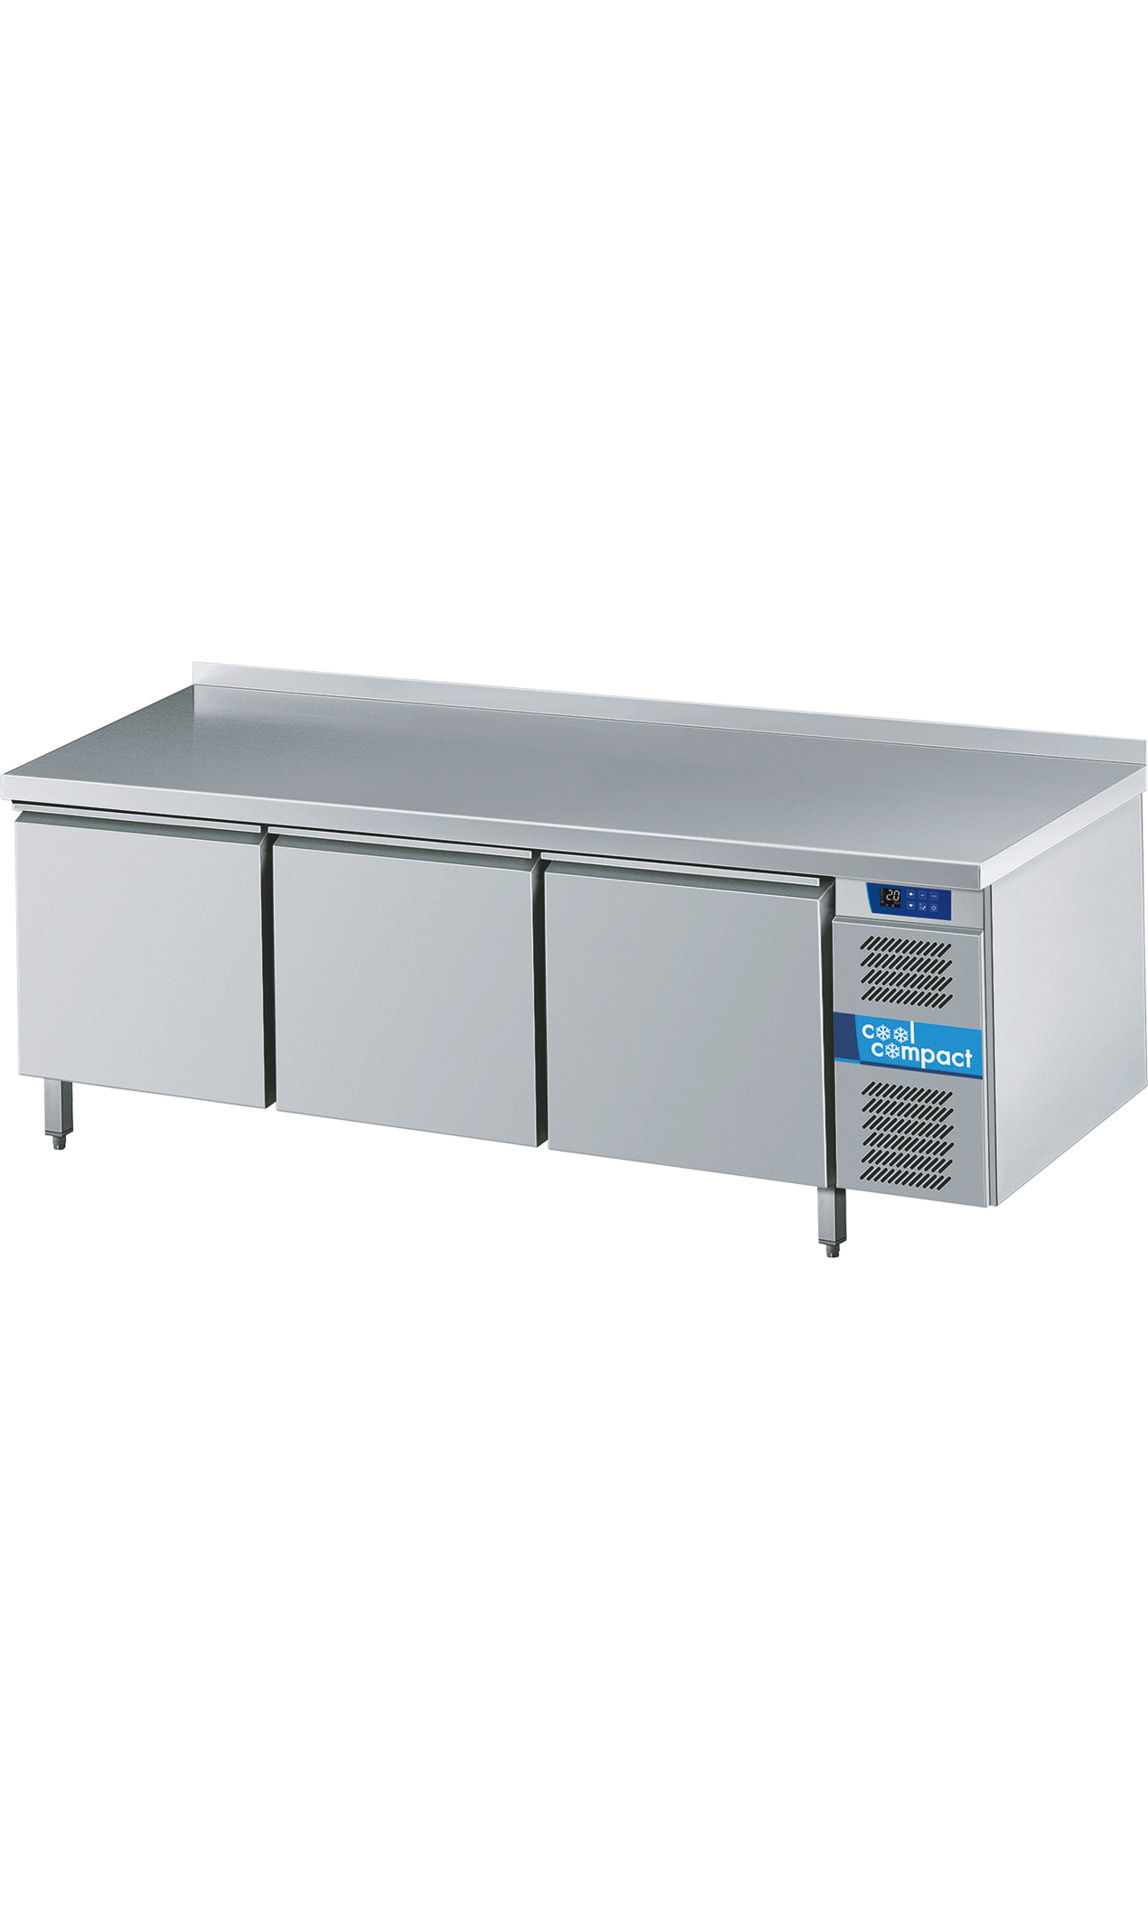 Backwaren-Kühltisch 3 Türen / 10 x EN  600 x 400 mm / ohne Tischplatte